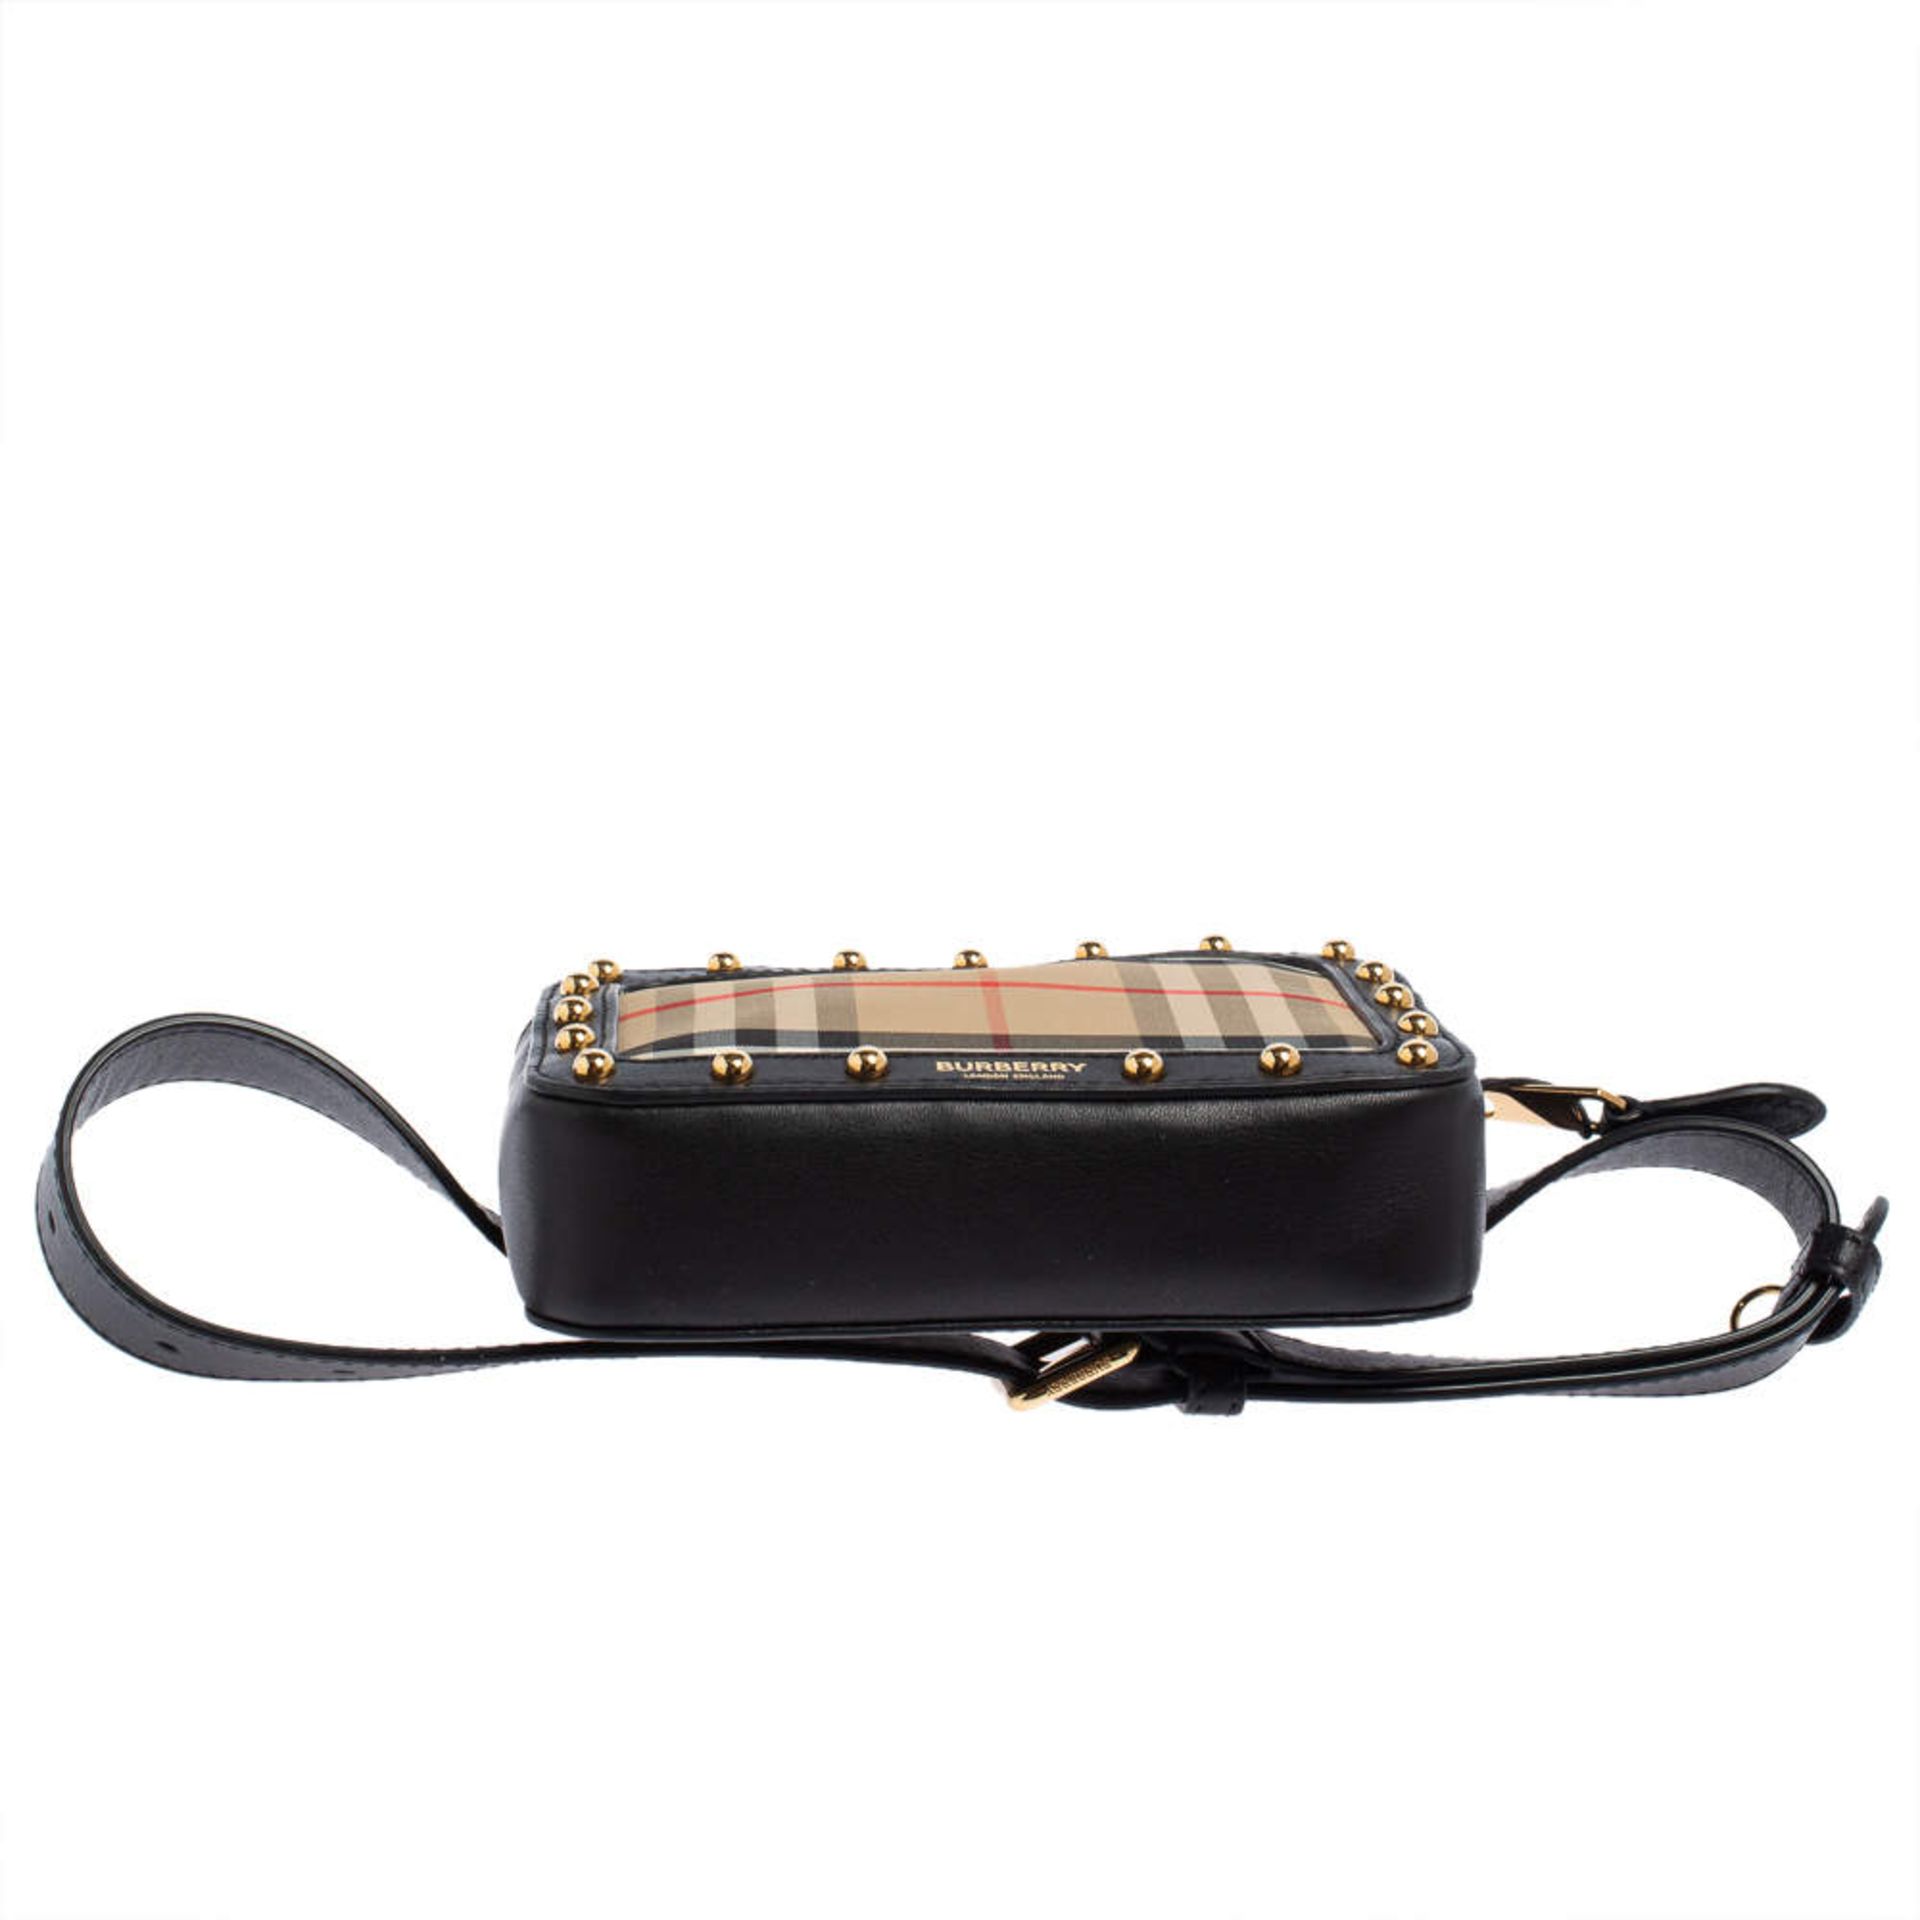 Genuine Burberry Beige/Black Nova Check Canvas and Leather Studded Elise Belt Bag Genuine - Image 2 of 5